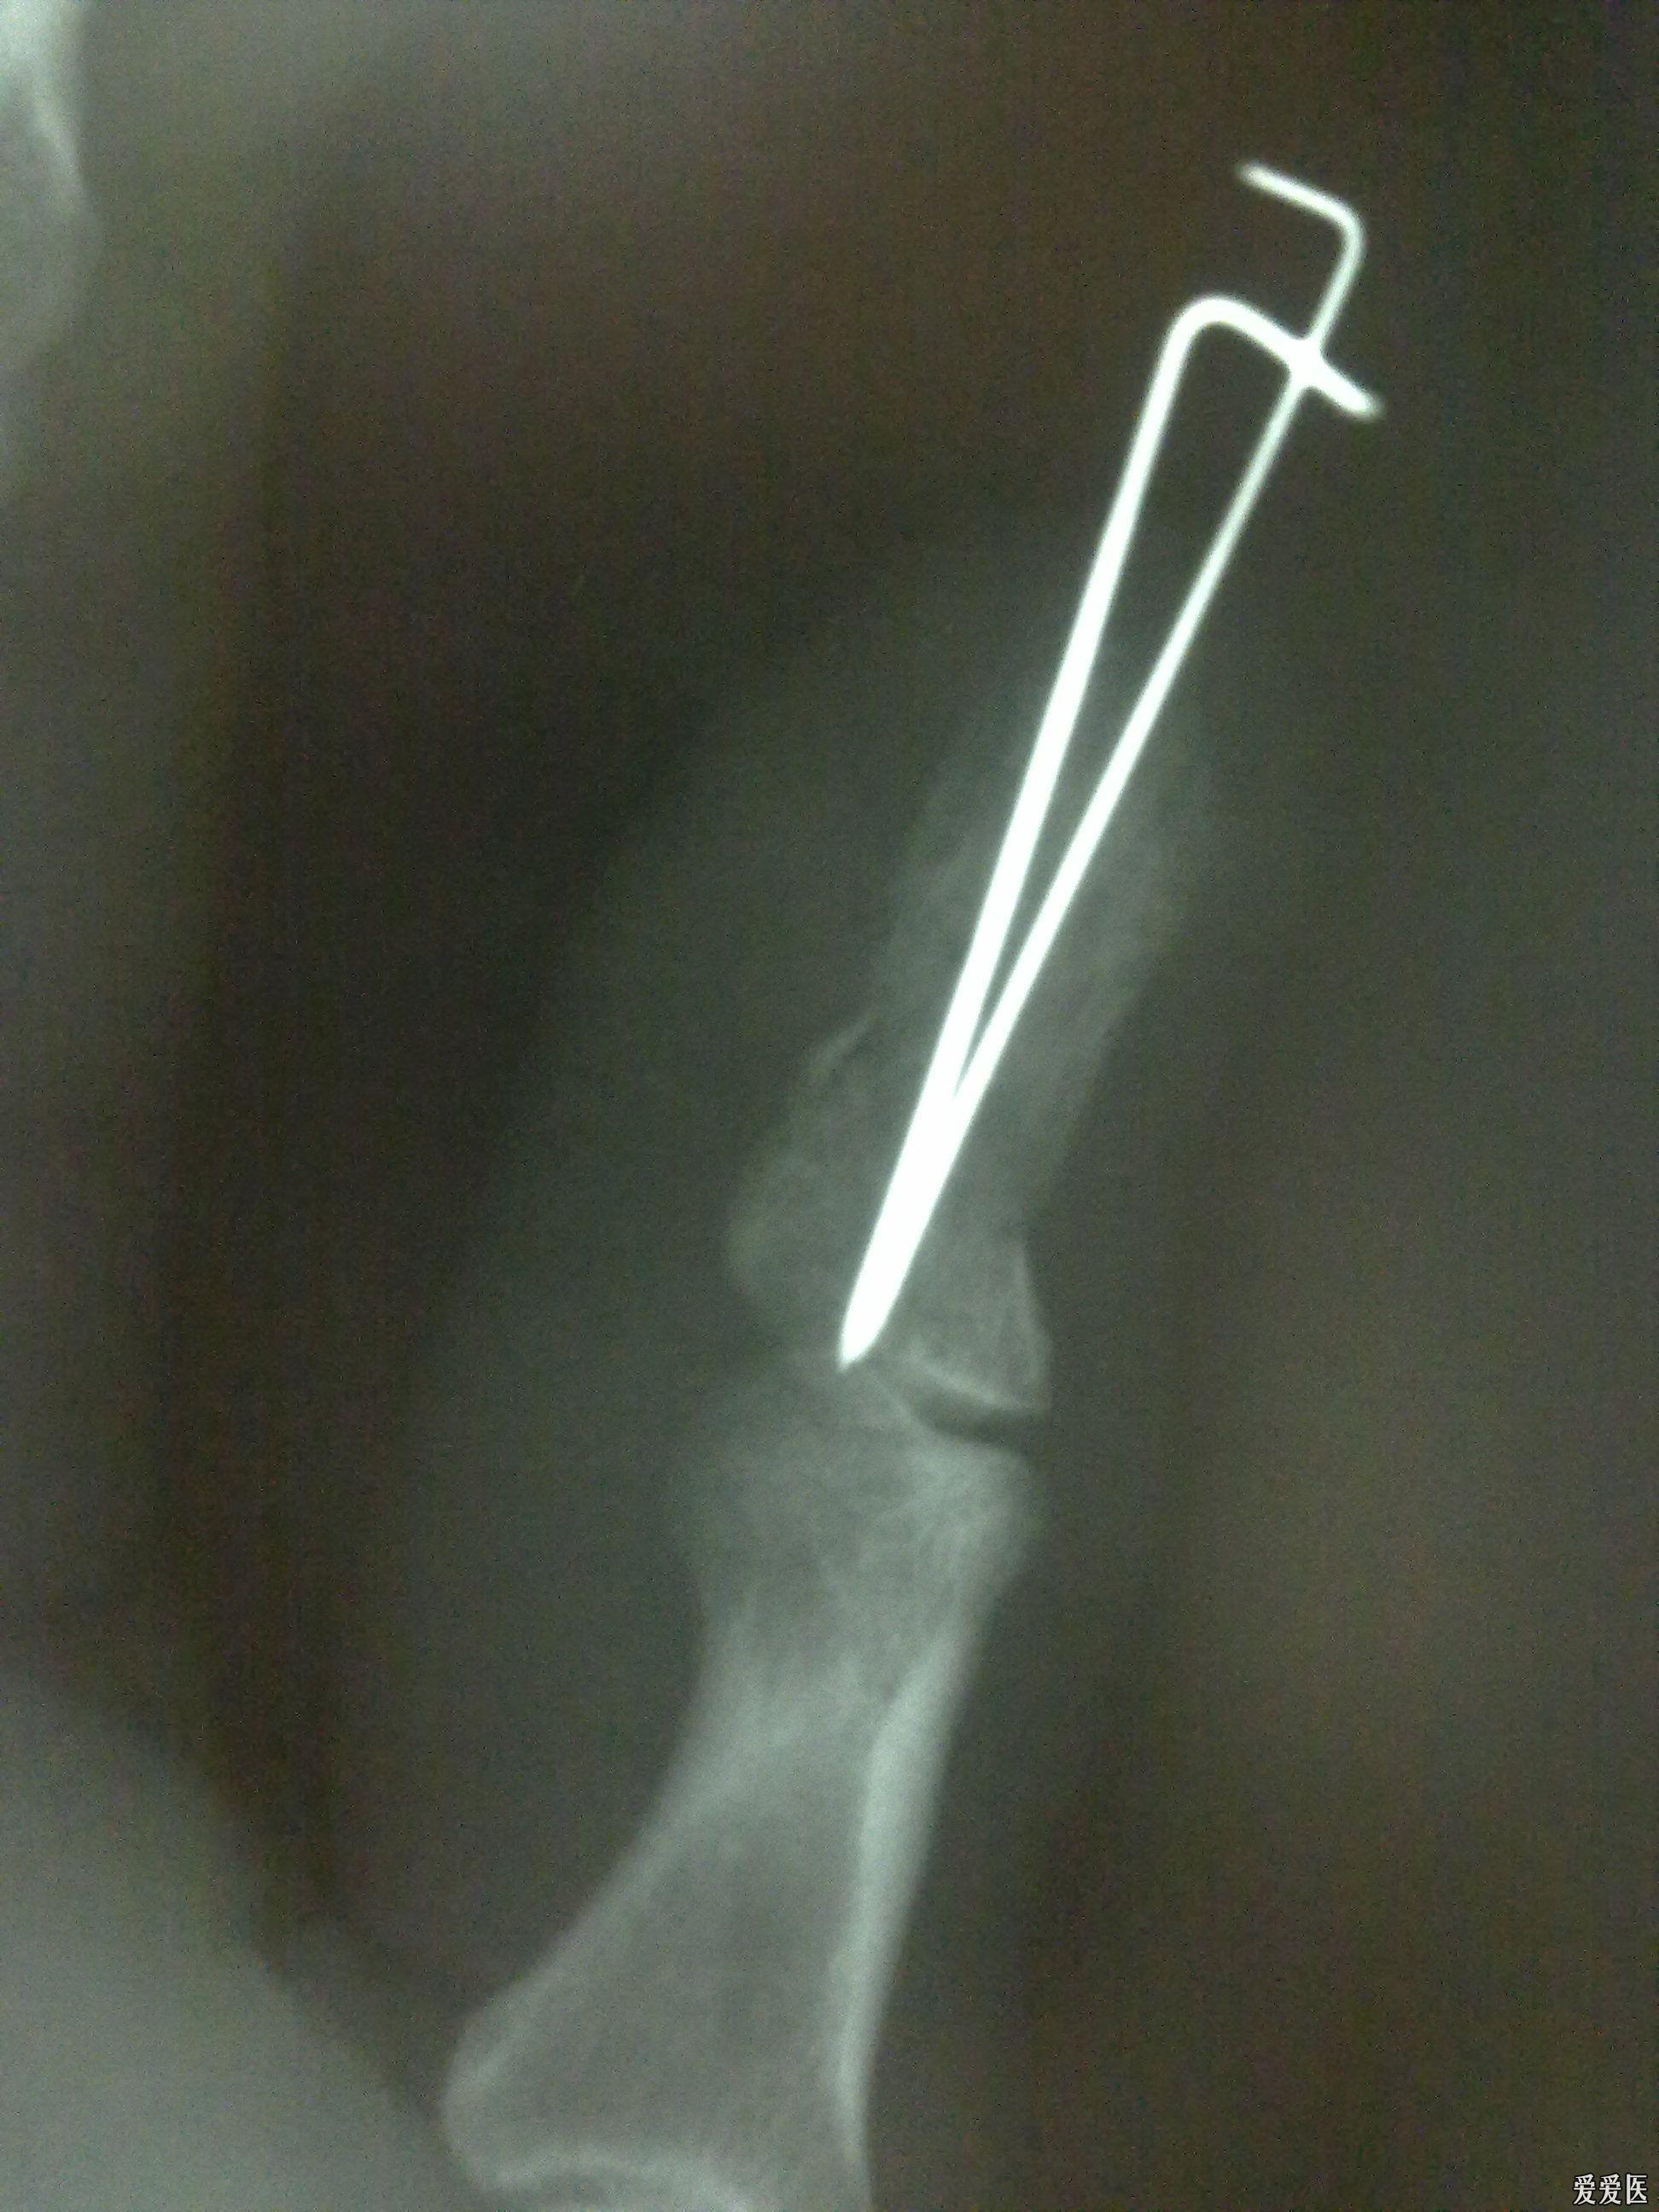 拇指指骨骨折闭合复位克氏针内固定